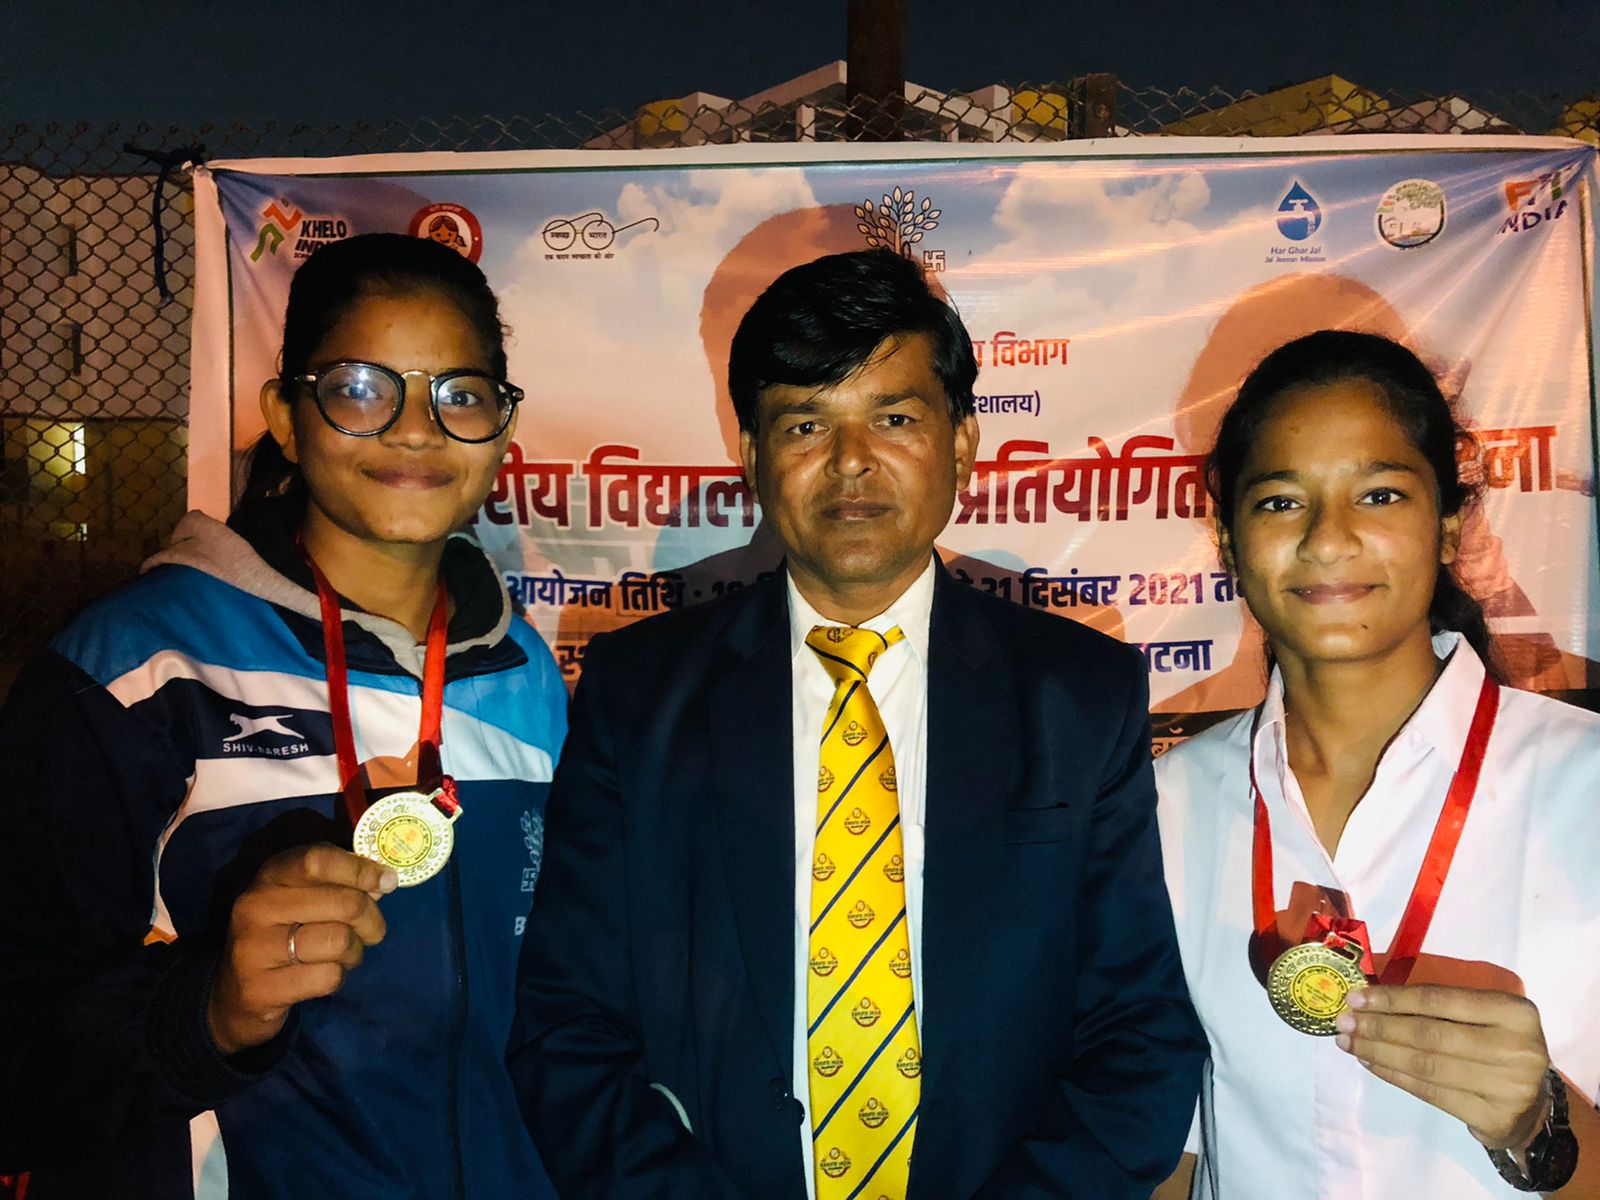 पटना जिला स्कूल  करार्टे खेल प्रतियोगिता  में  सेंट जोसफ कान्वेंट की उन्नतिराज , खुशीराज और श्रुति को स्वर्ण पदक